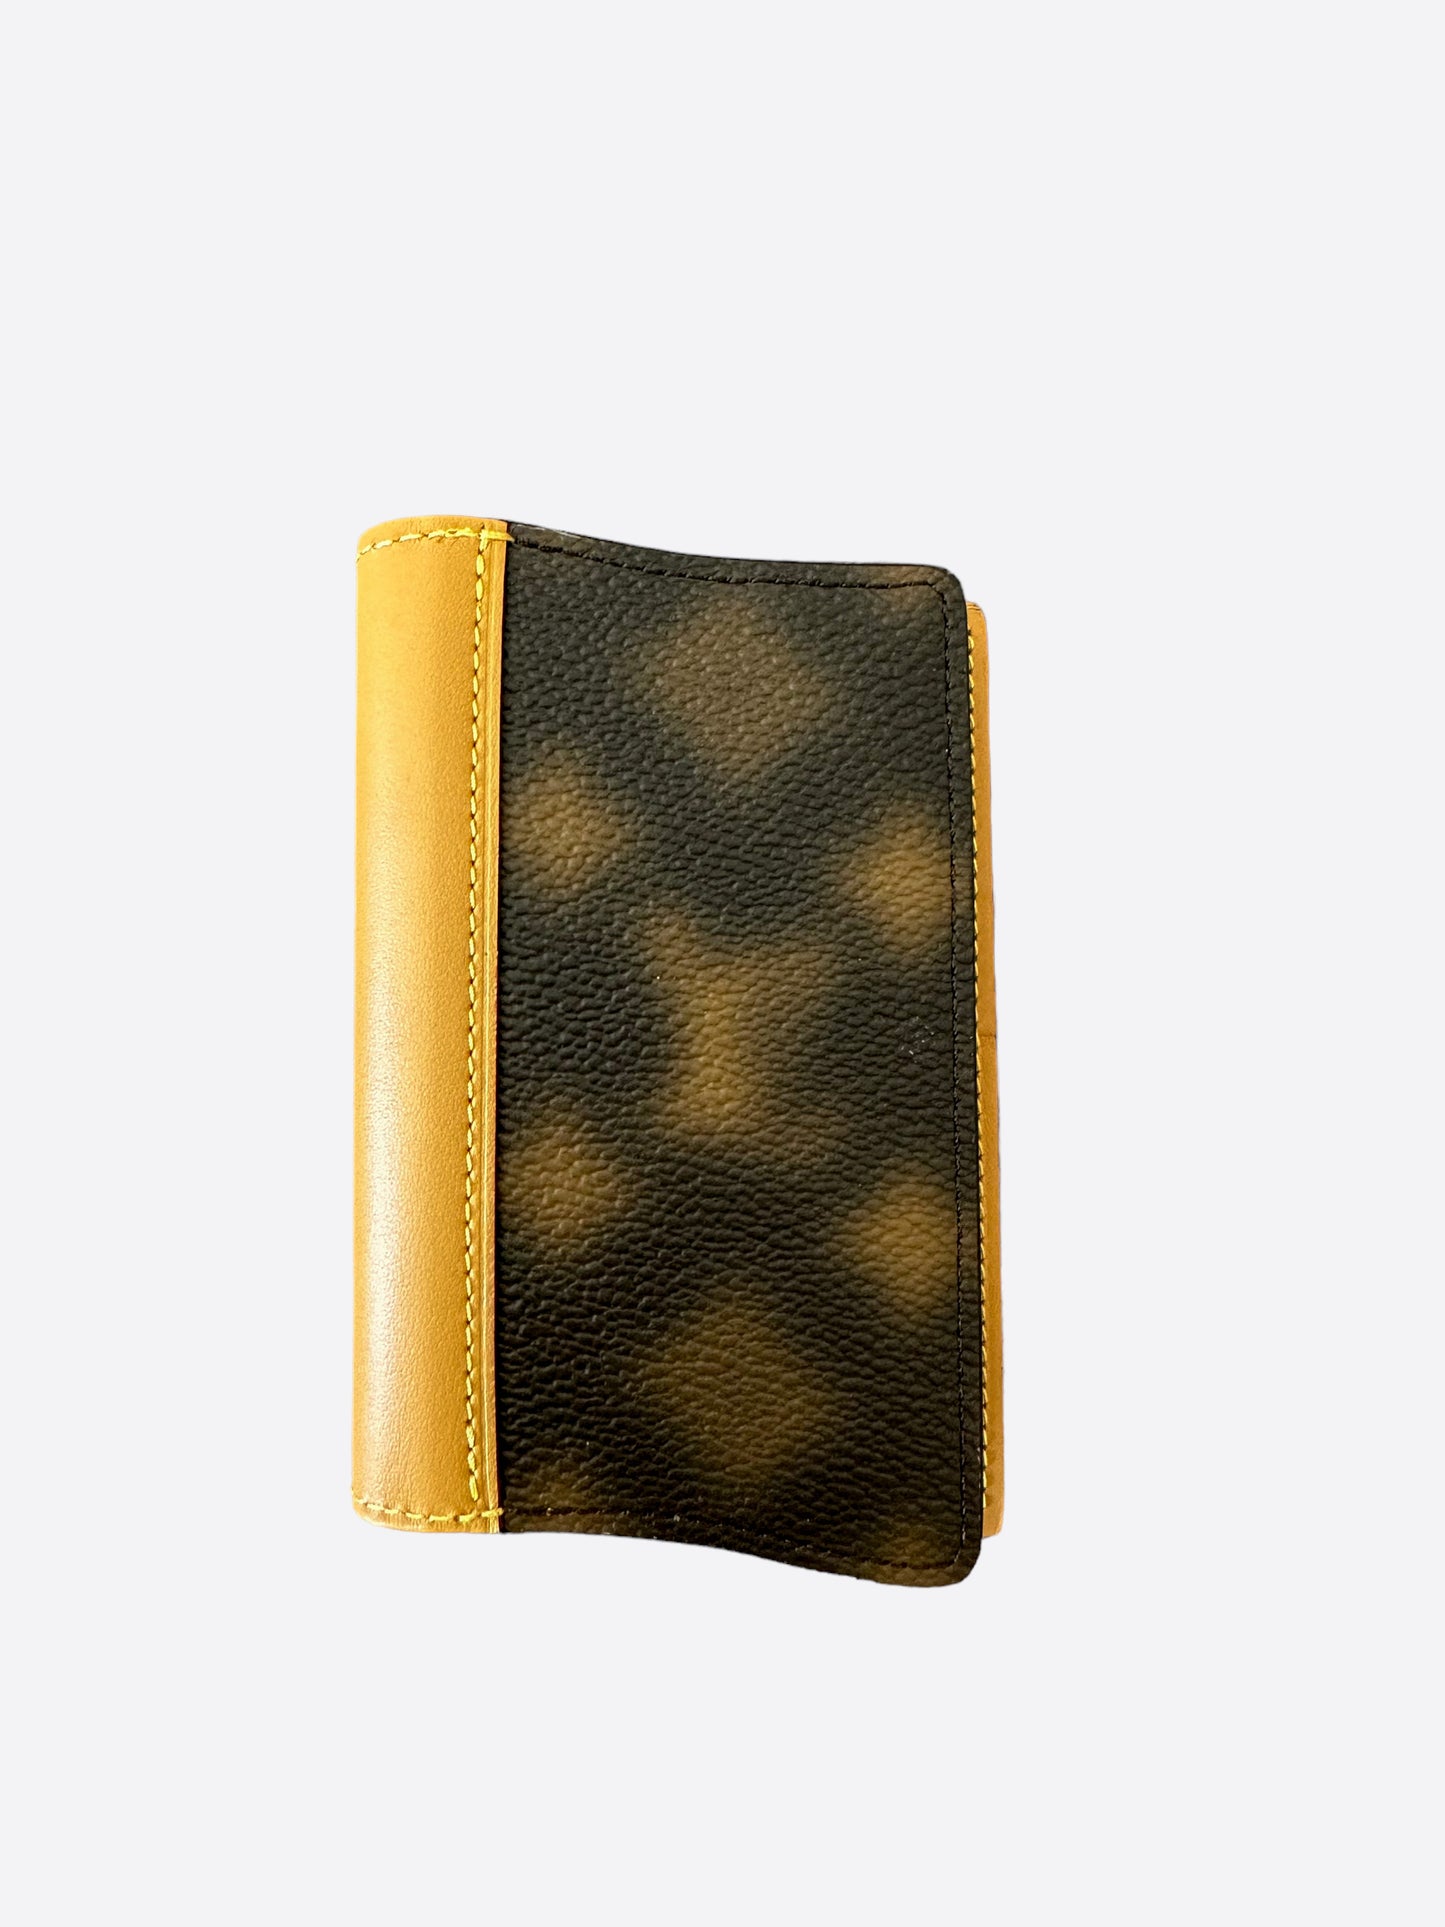 Louis Vuitton Blurry Monogram Wavy Pocket Organizer